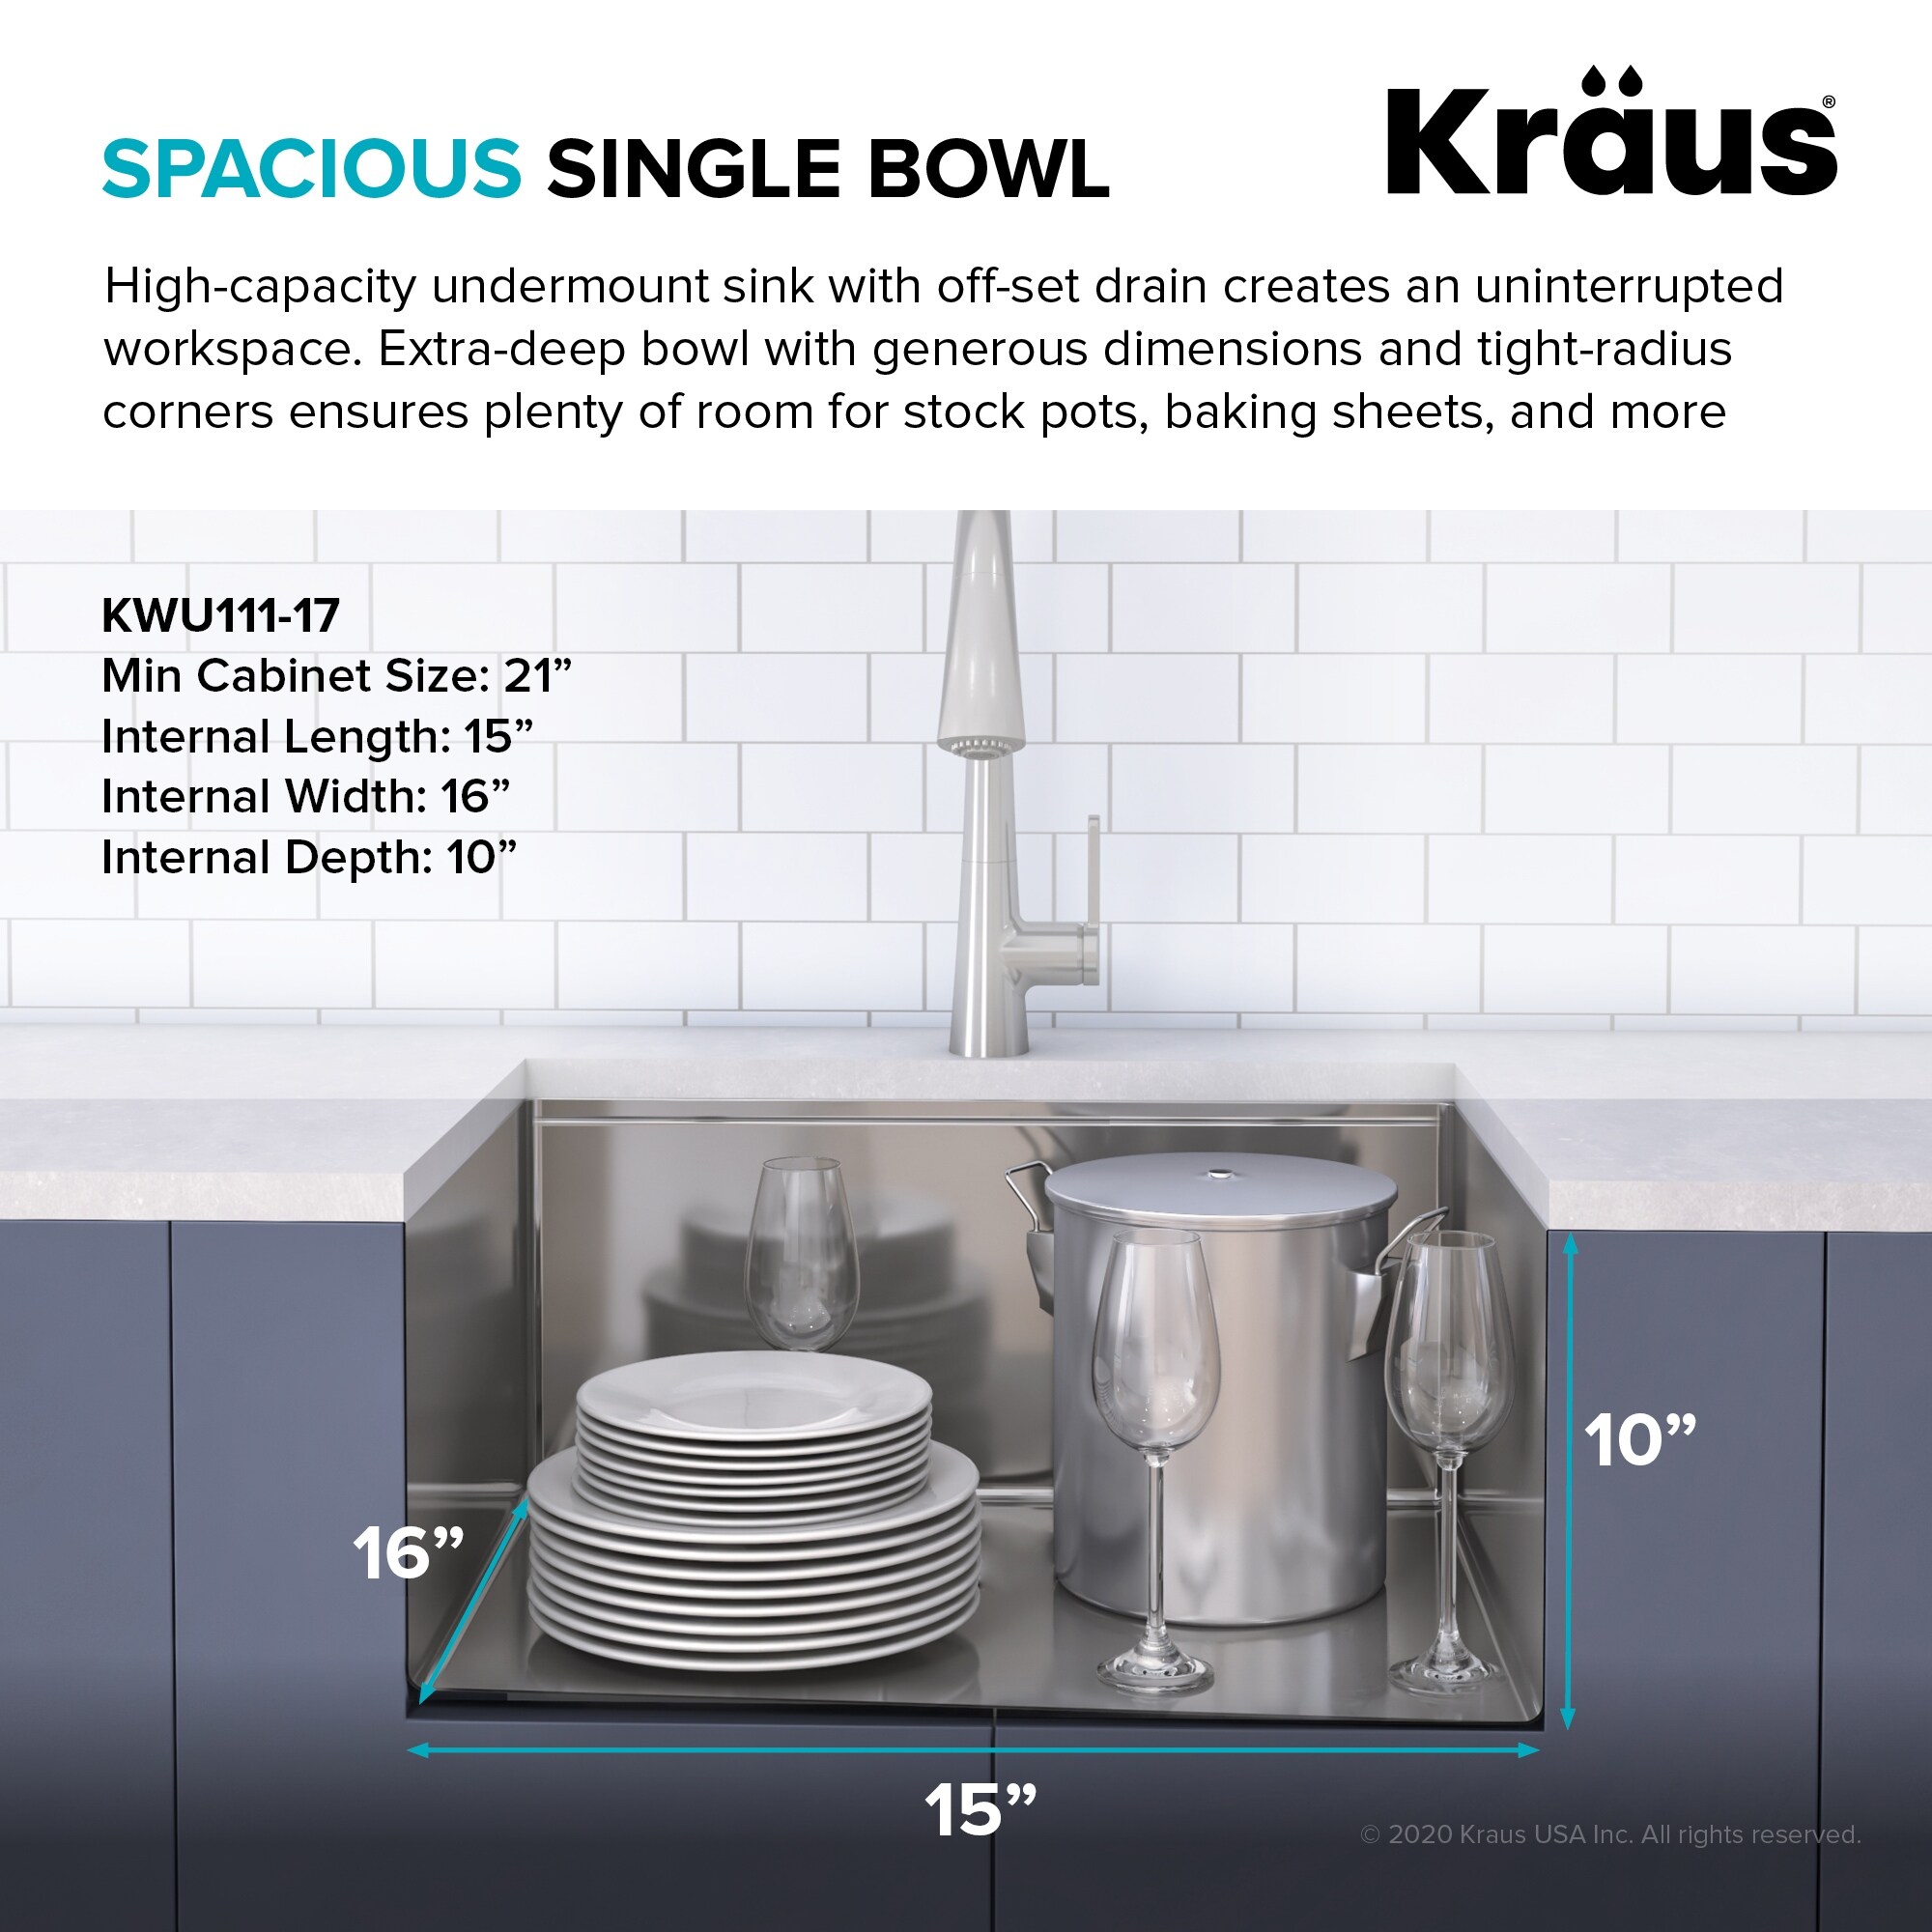 KRAUS Kore Workstation Undermount Stainless Steel Kitchen Sink (As Is Item)  Bed Bath  Beyond 34932024